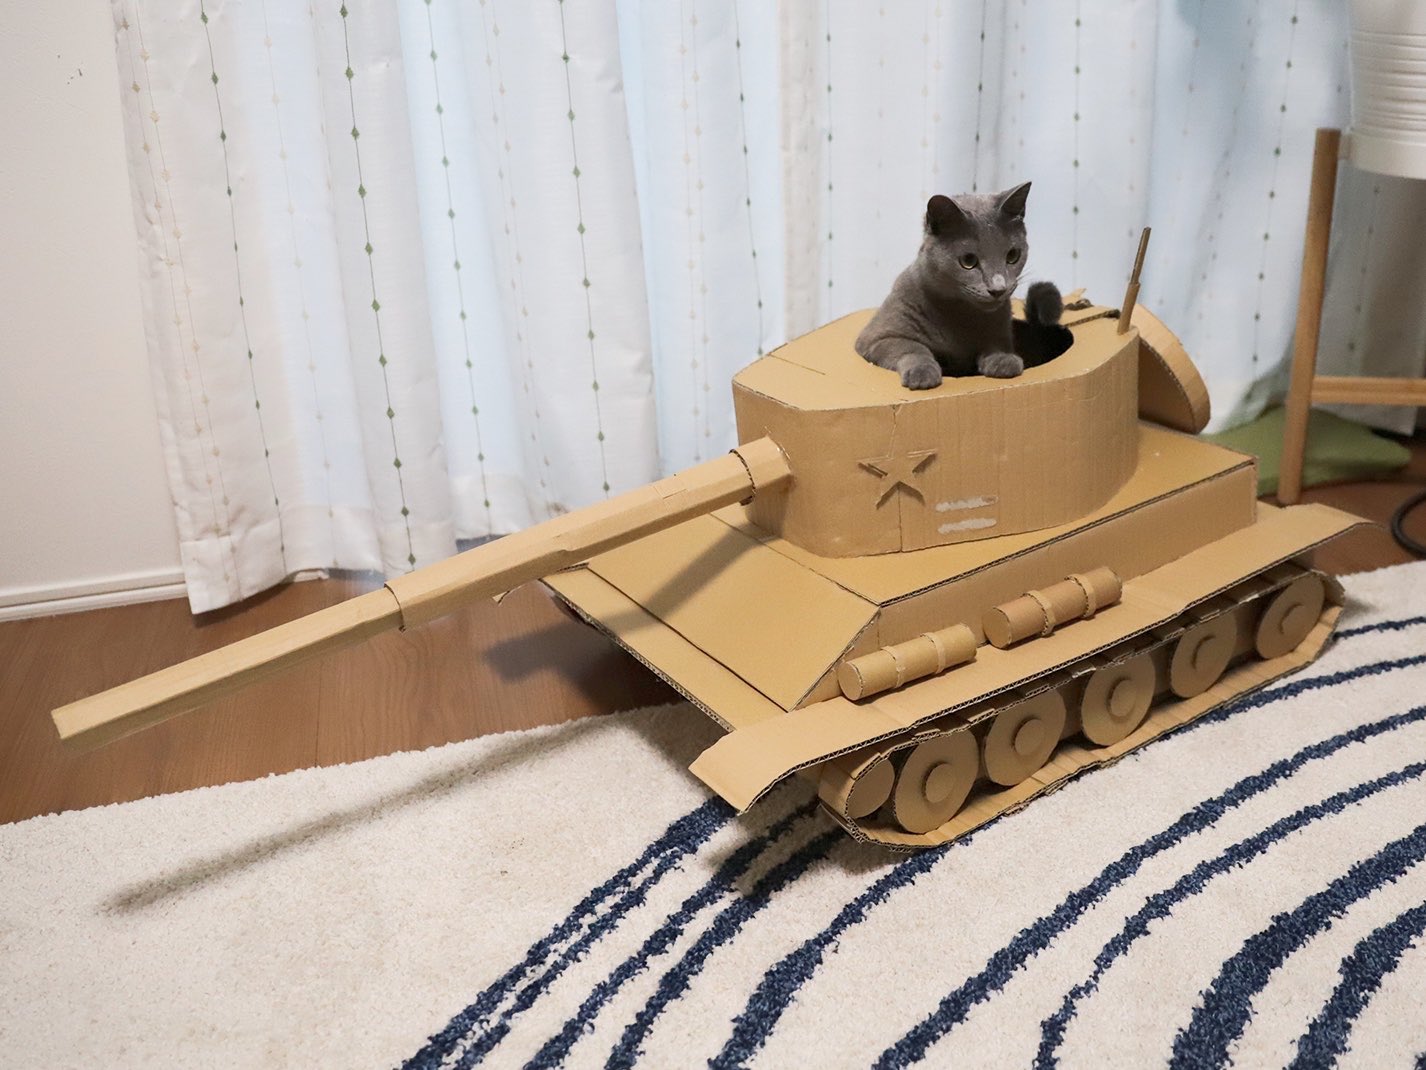 ｍａｒｉ 暇だったので 猫戦車作ってみました Cattank ねこ戦車 T Co Sjsinvmbvc Twitter